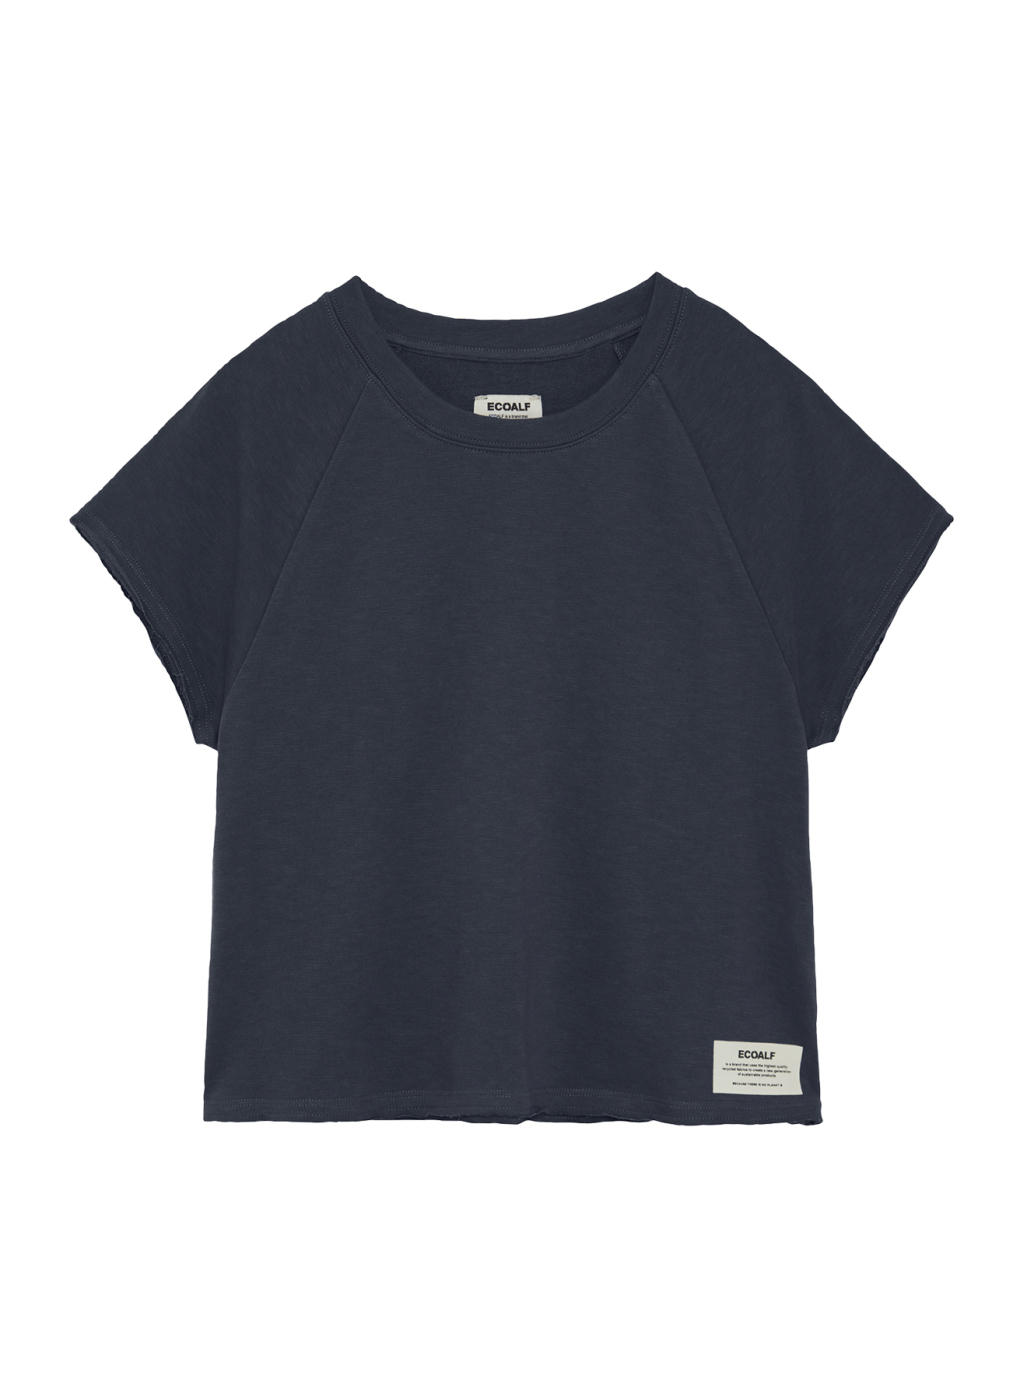 ECOALF camiseta manga corta azul marino